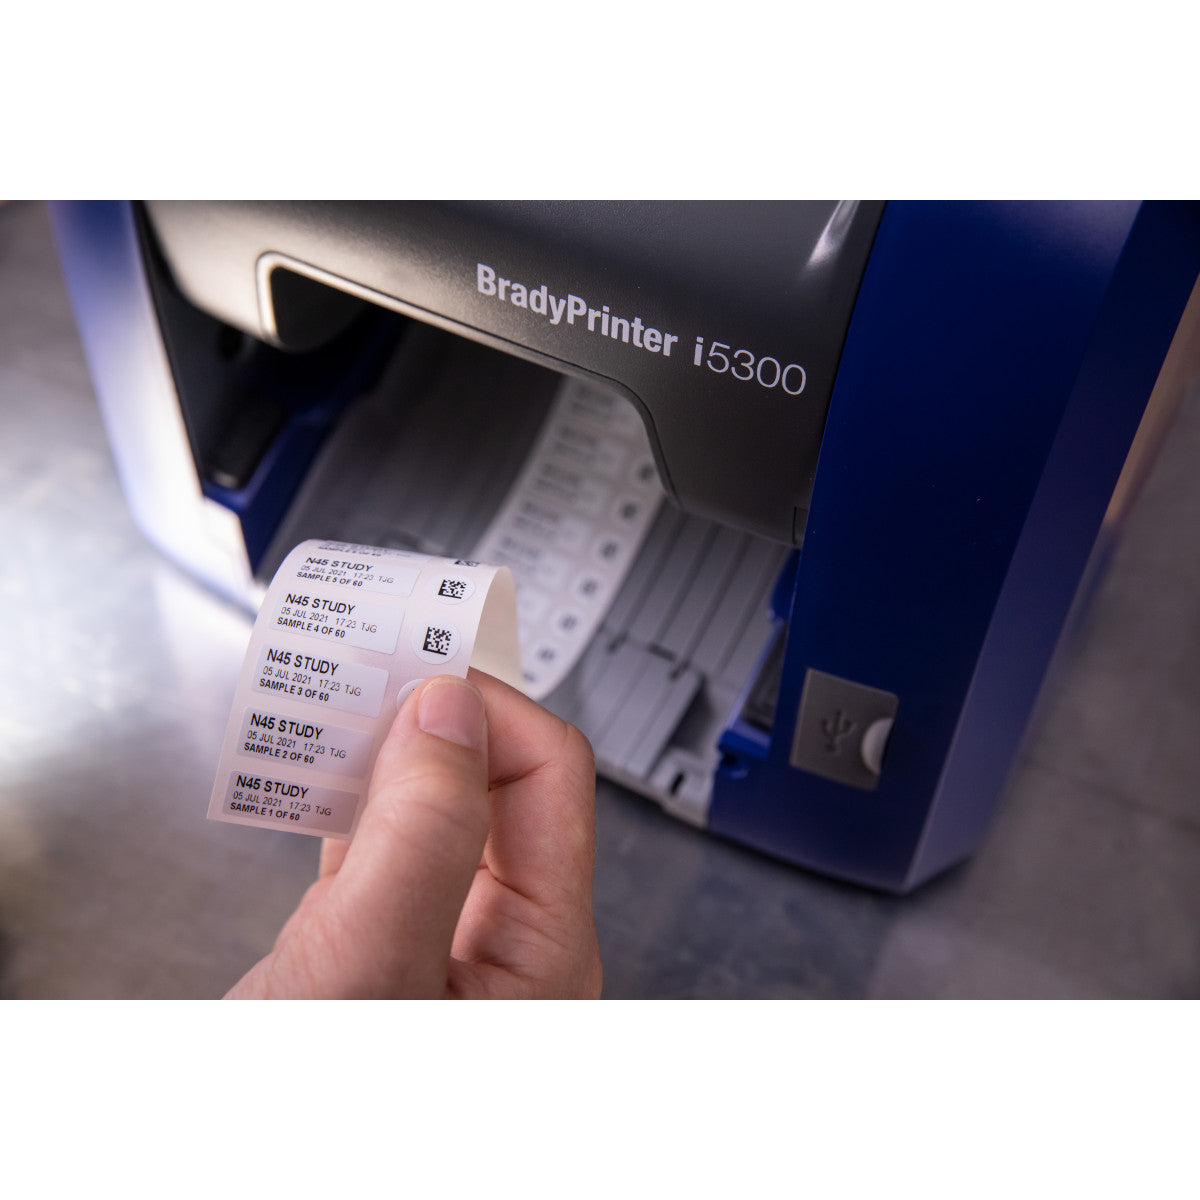 310339 - Stampante per etichette industriali i5300 - Unione Europea con Suite Laboratorio per Brady Workstation